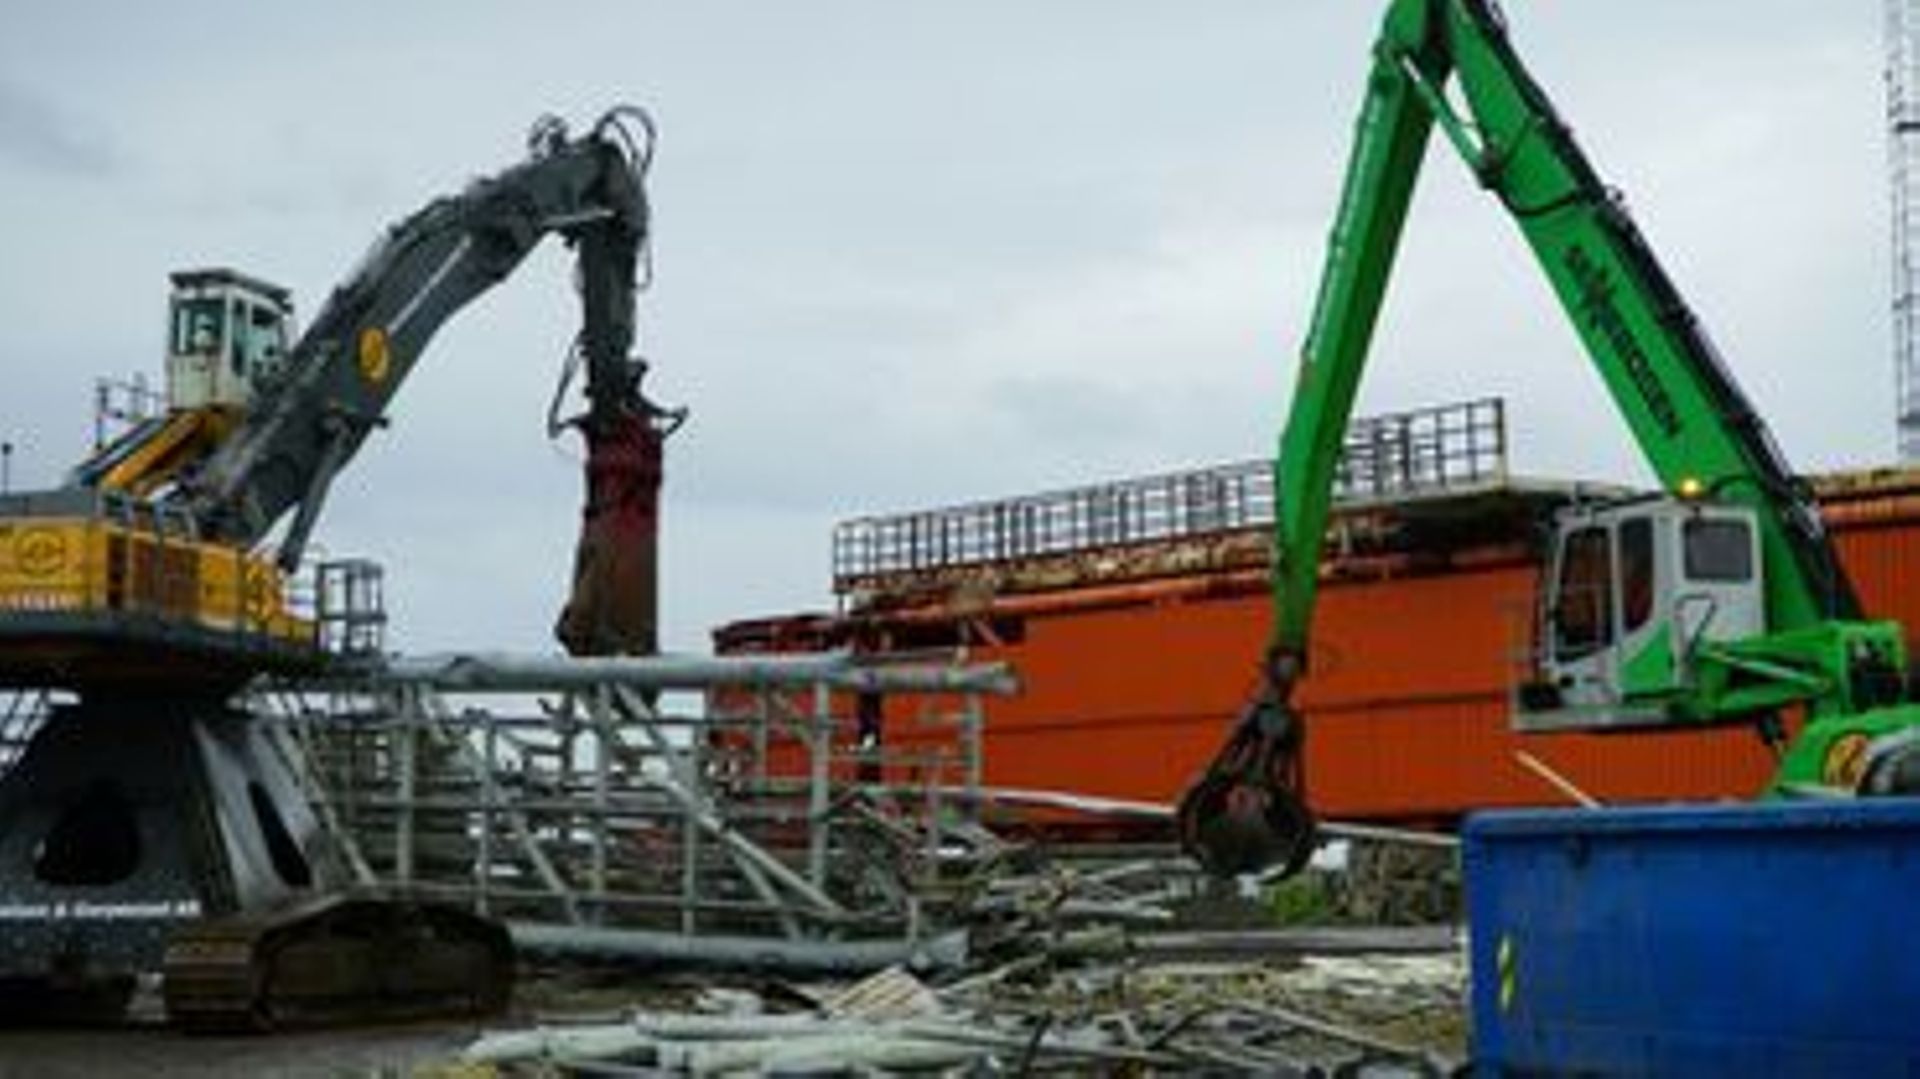 Des pelleteuses évacuent des parties d'une plateforme pétrolière désaffectée qui a été démantelée, le 17 juin 2022 à Stord, en Norvège.